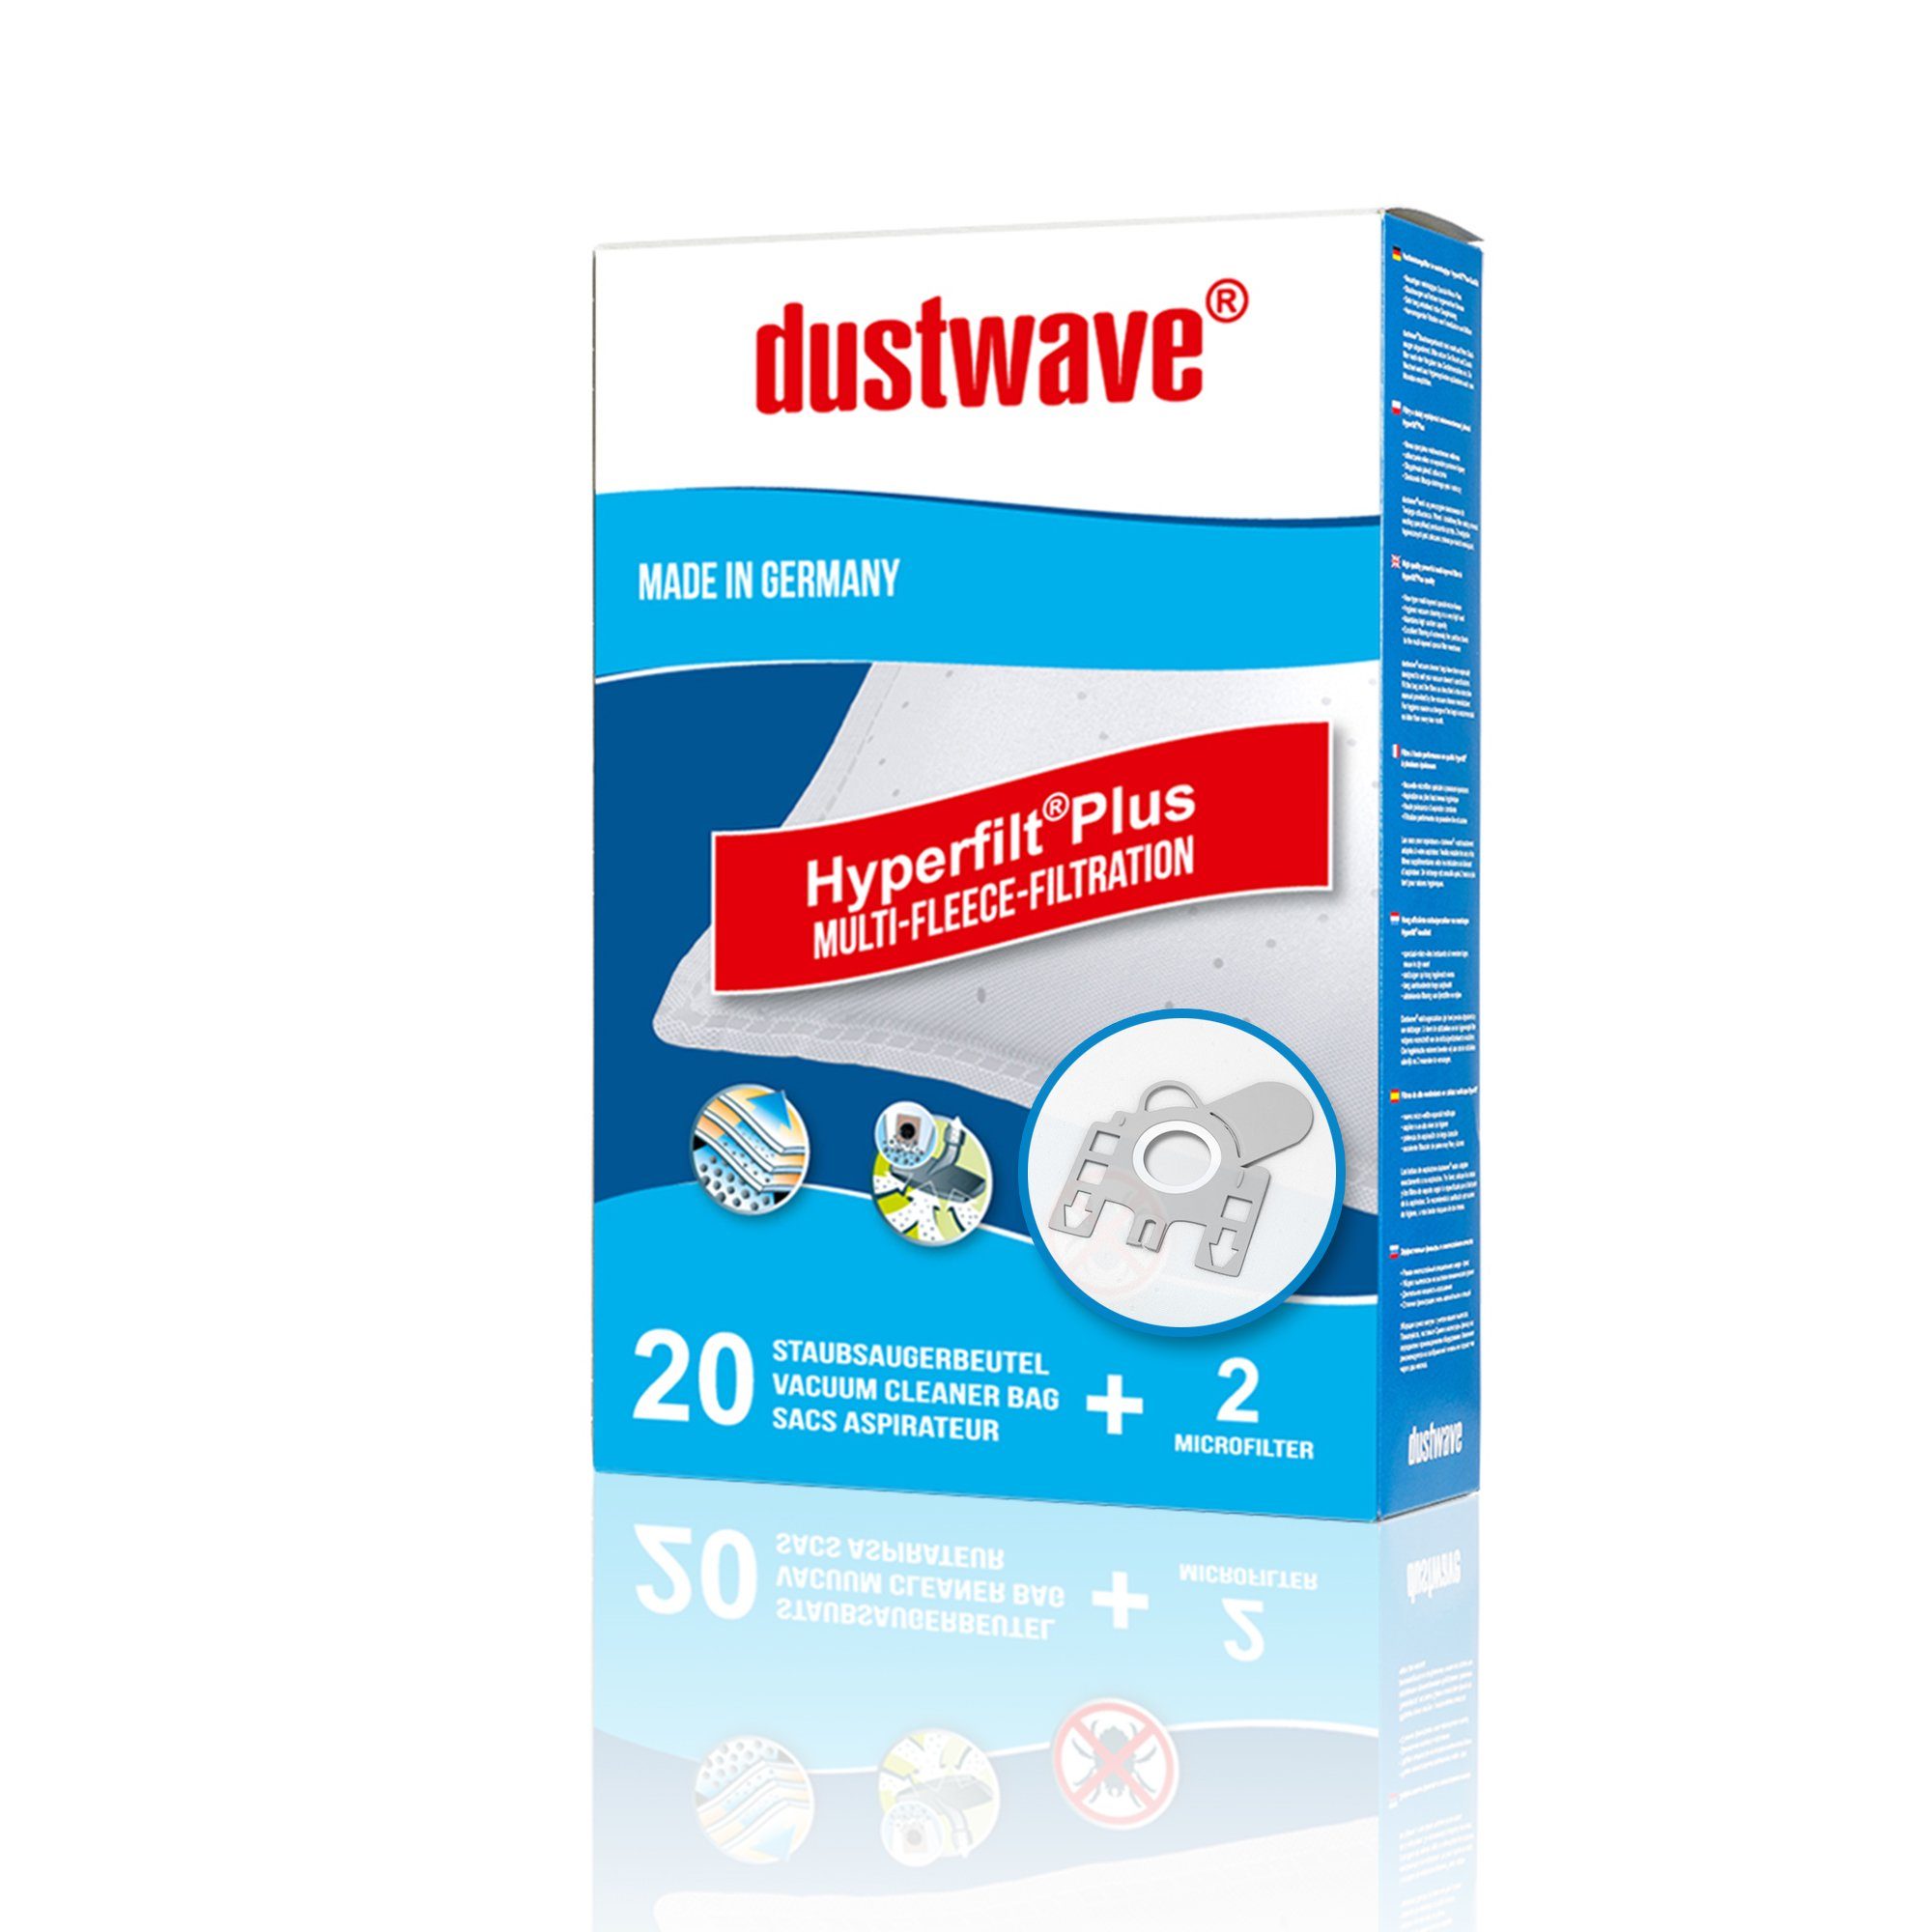 Dustwave Staubsaugerbeutel Megapack, passend für Adix 170, 20 St., Megapack, 20 Staubsaugerbeutel + 2 Hepa-Filter (ca. 15x15cm - zuschneidbar) Adix 170 - Premium